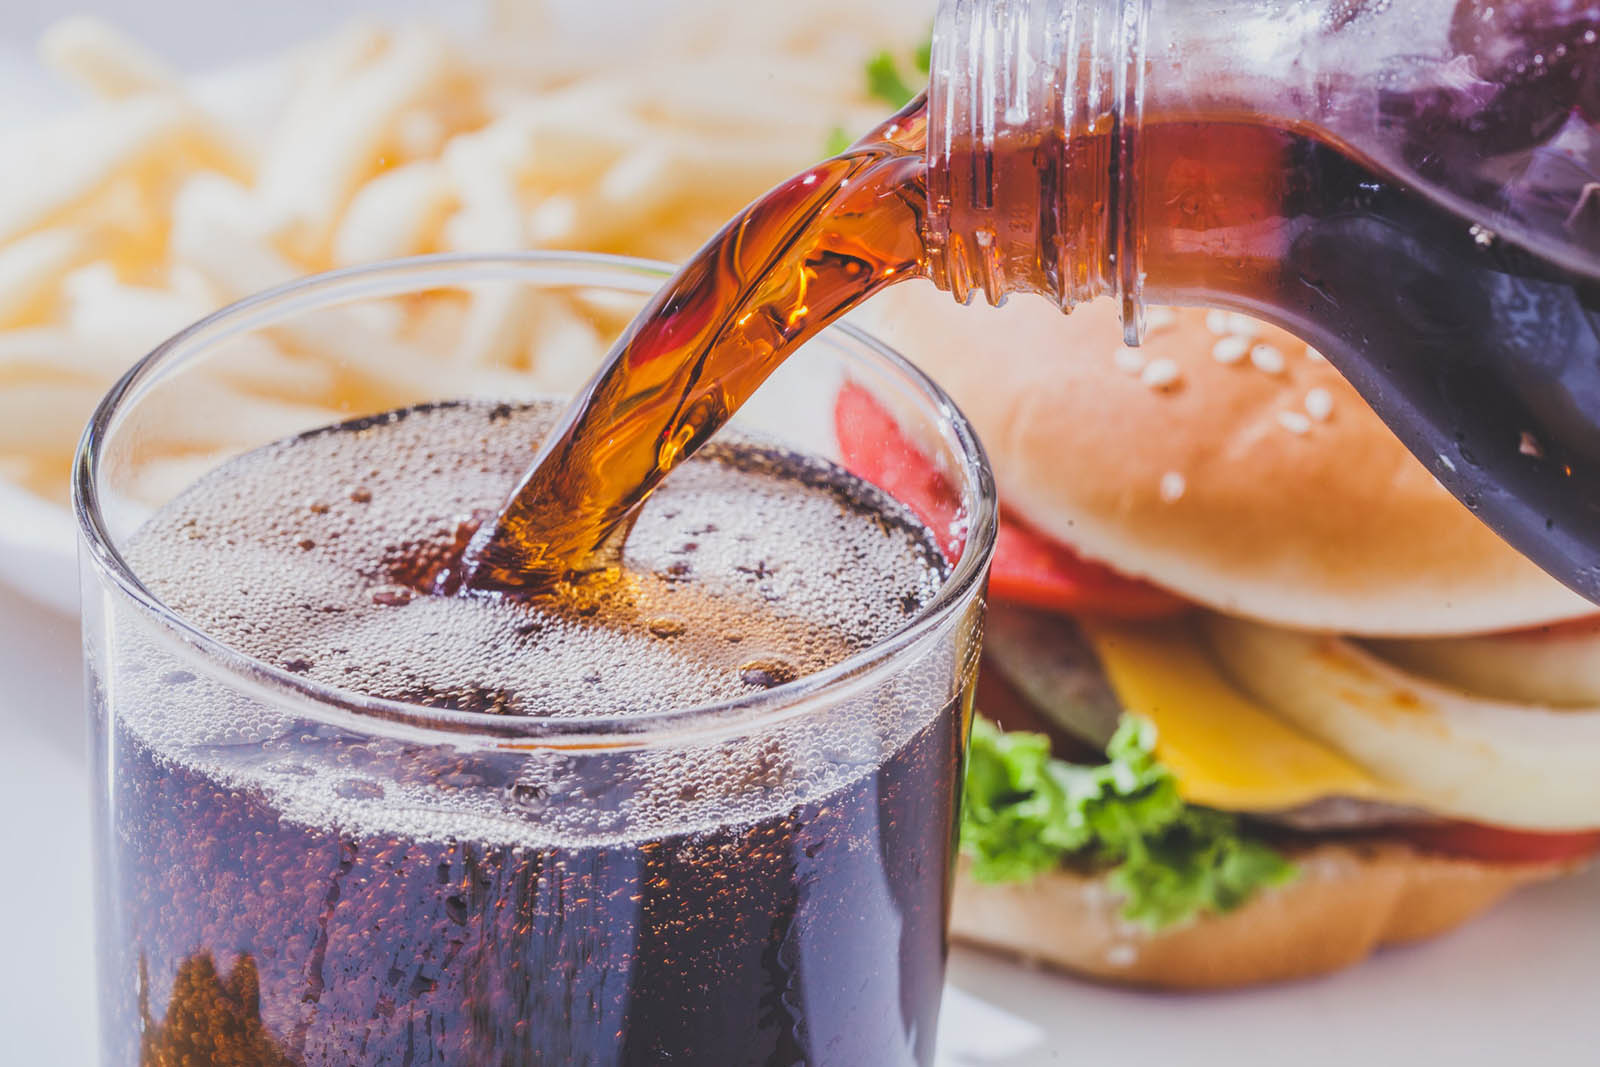 Sandwich Best Quality Quiz Soda Coca Cola Soft Drink Burger Fast Food